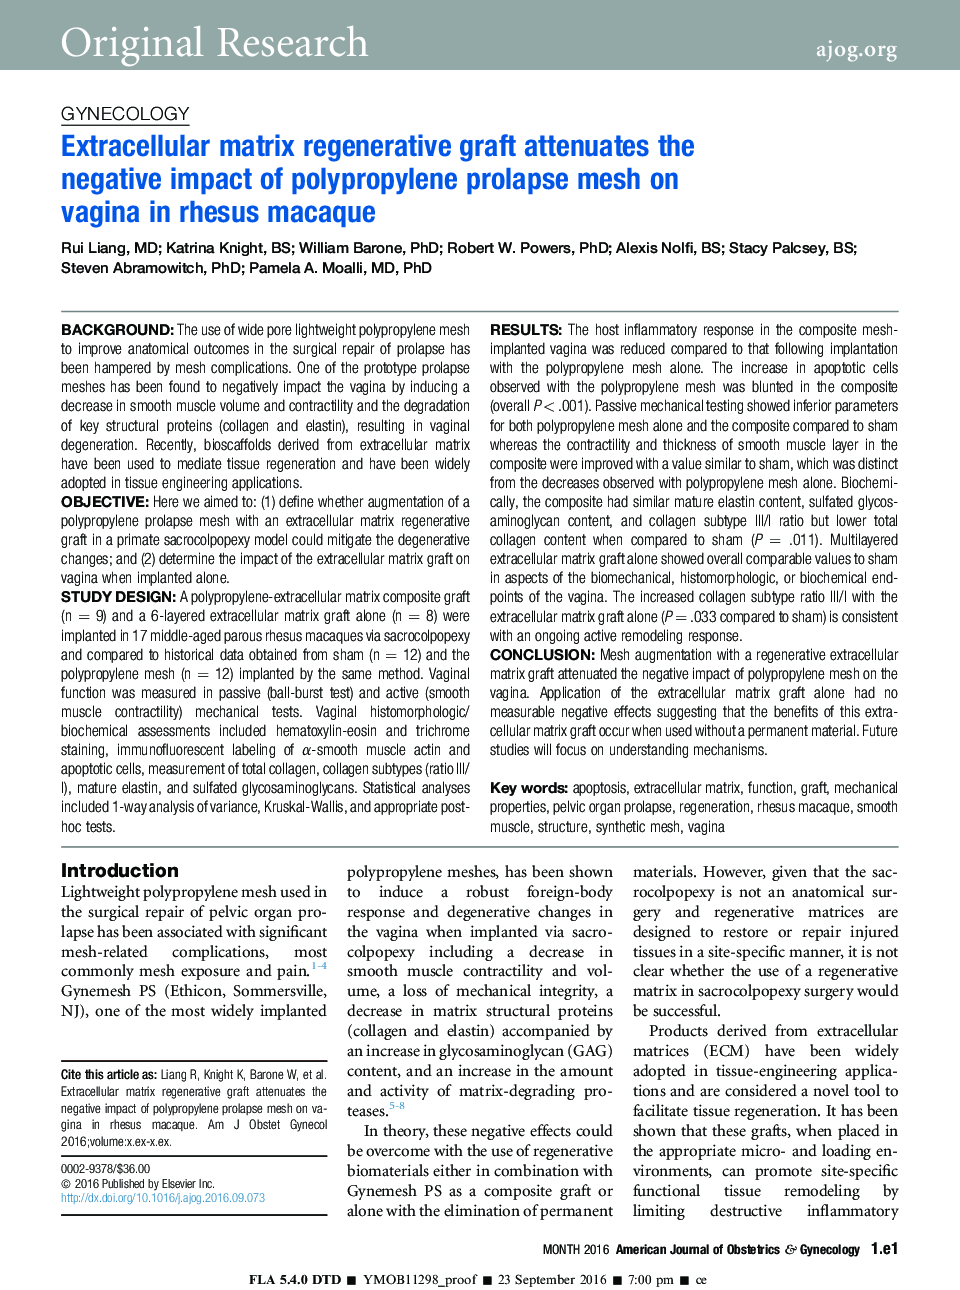 پیوند بازسازی کننده ماتریکس غیر سلولی، تاثیر منفی مش پرولاپس پلی پروپیلن را در واژن آآآ در رشت مازک کاهش می دهد 